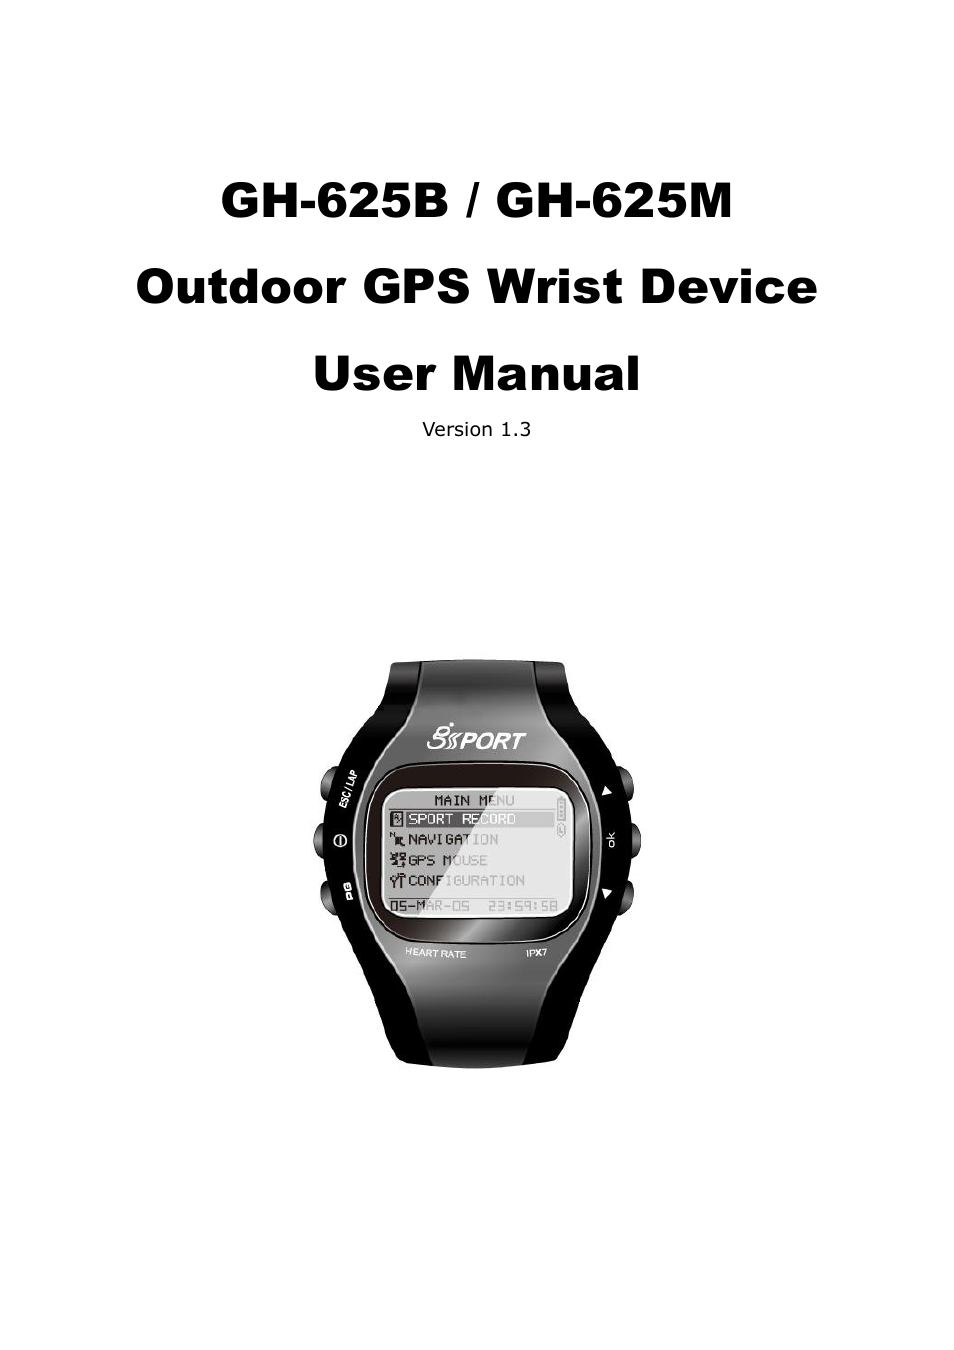 GH-625M User Manual